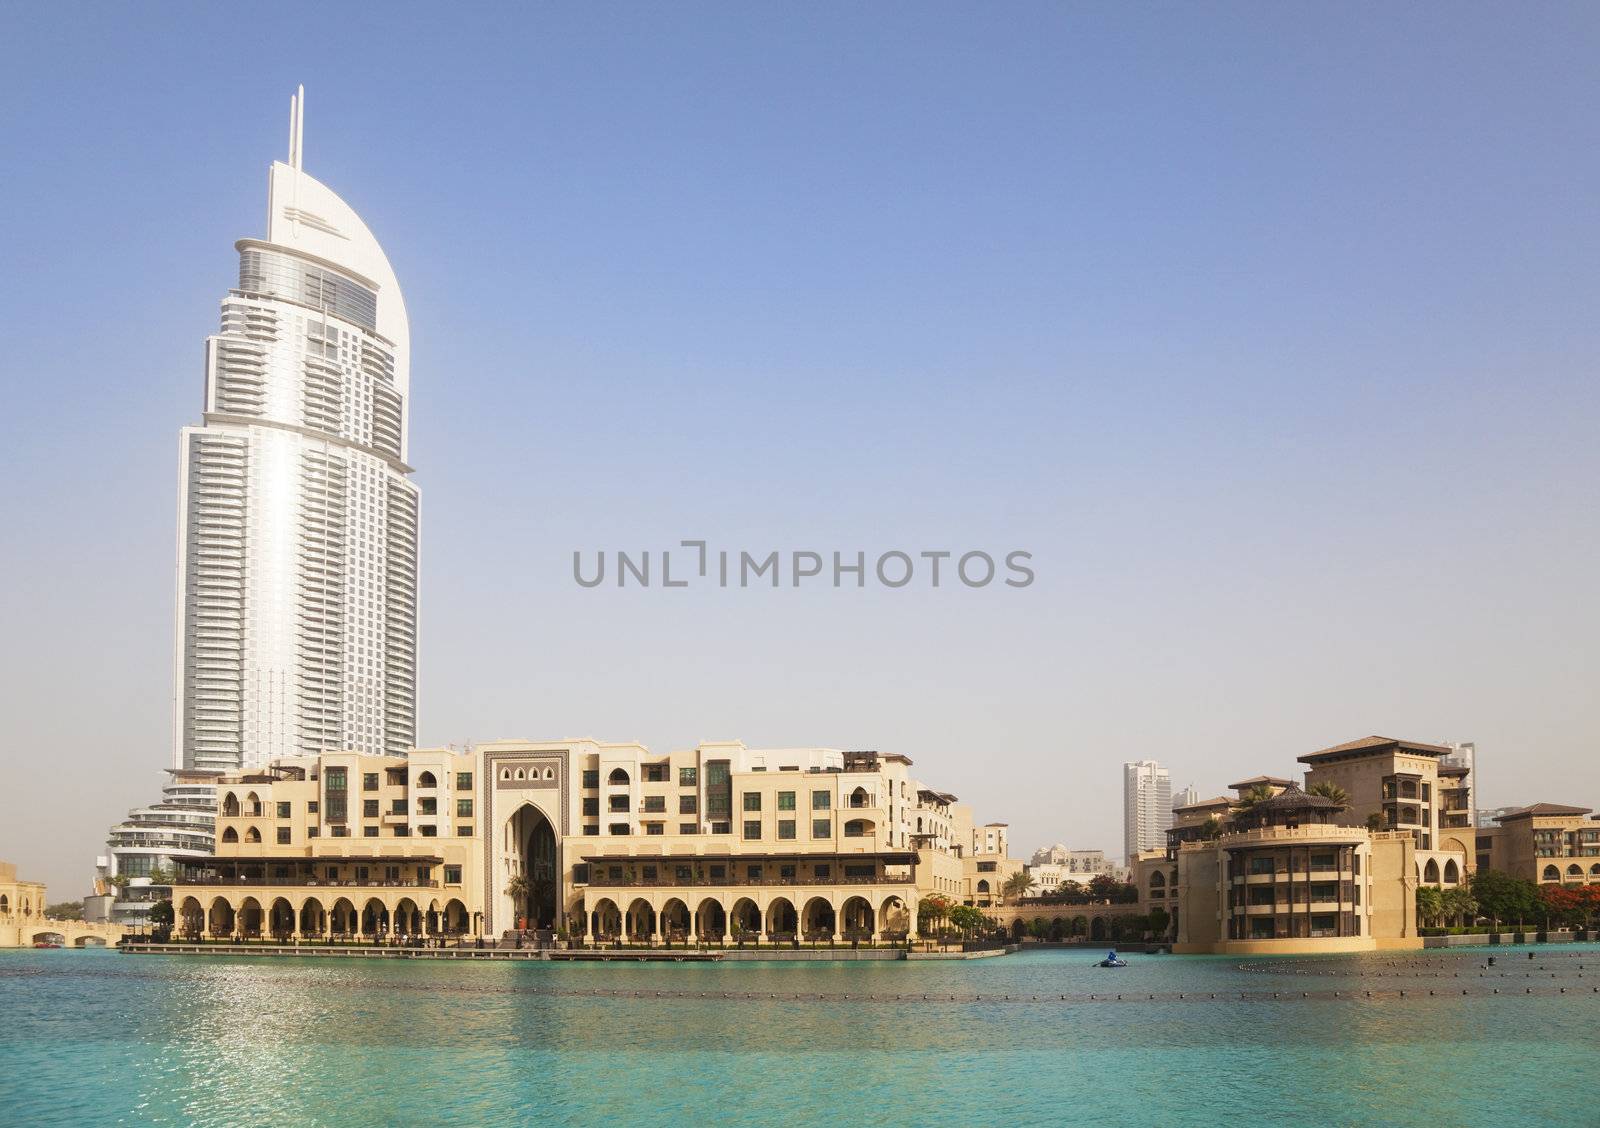 Image of Dubai skyline, United Arab Emirates.
